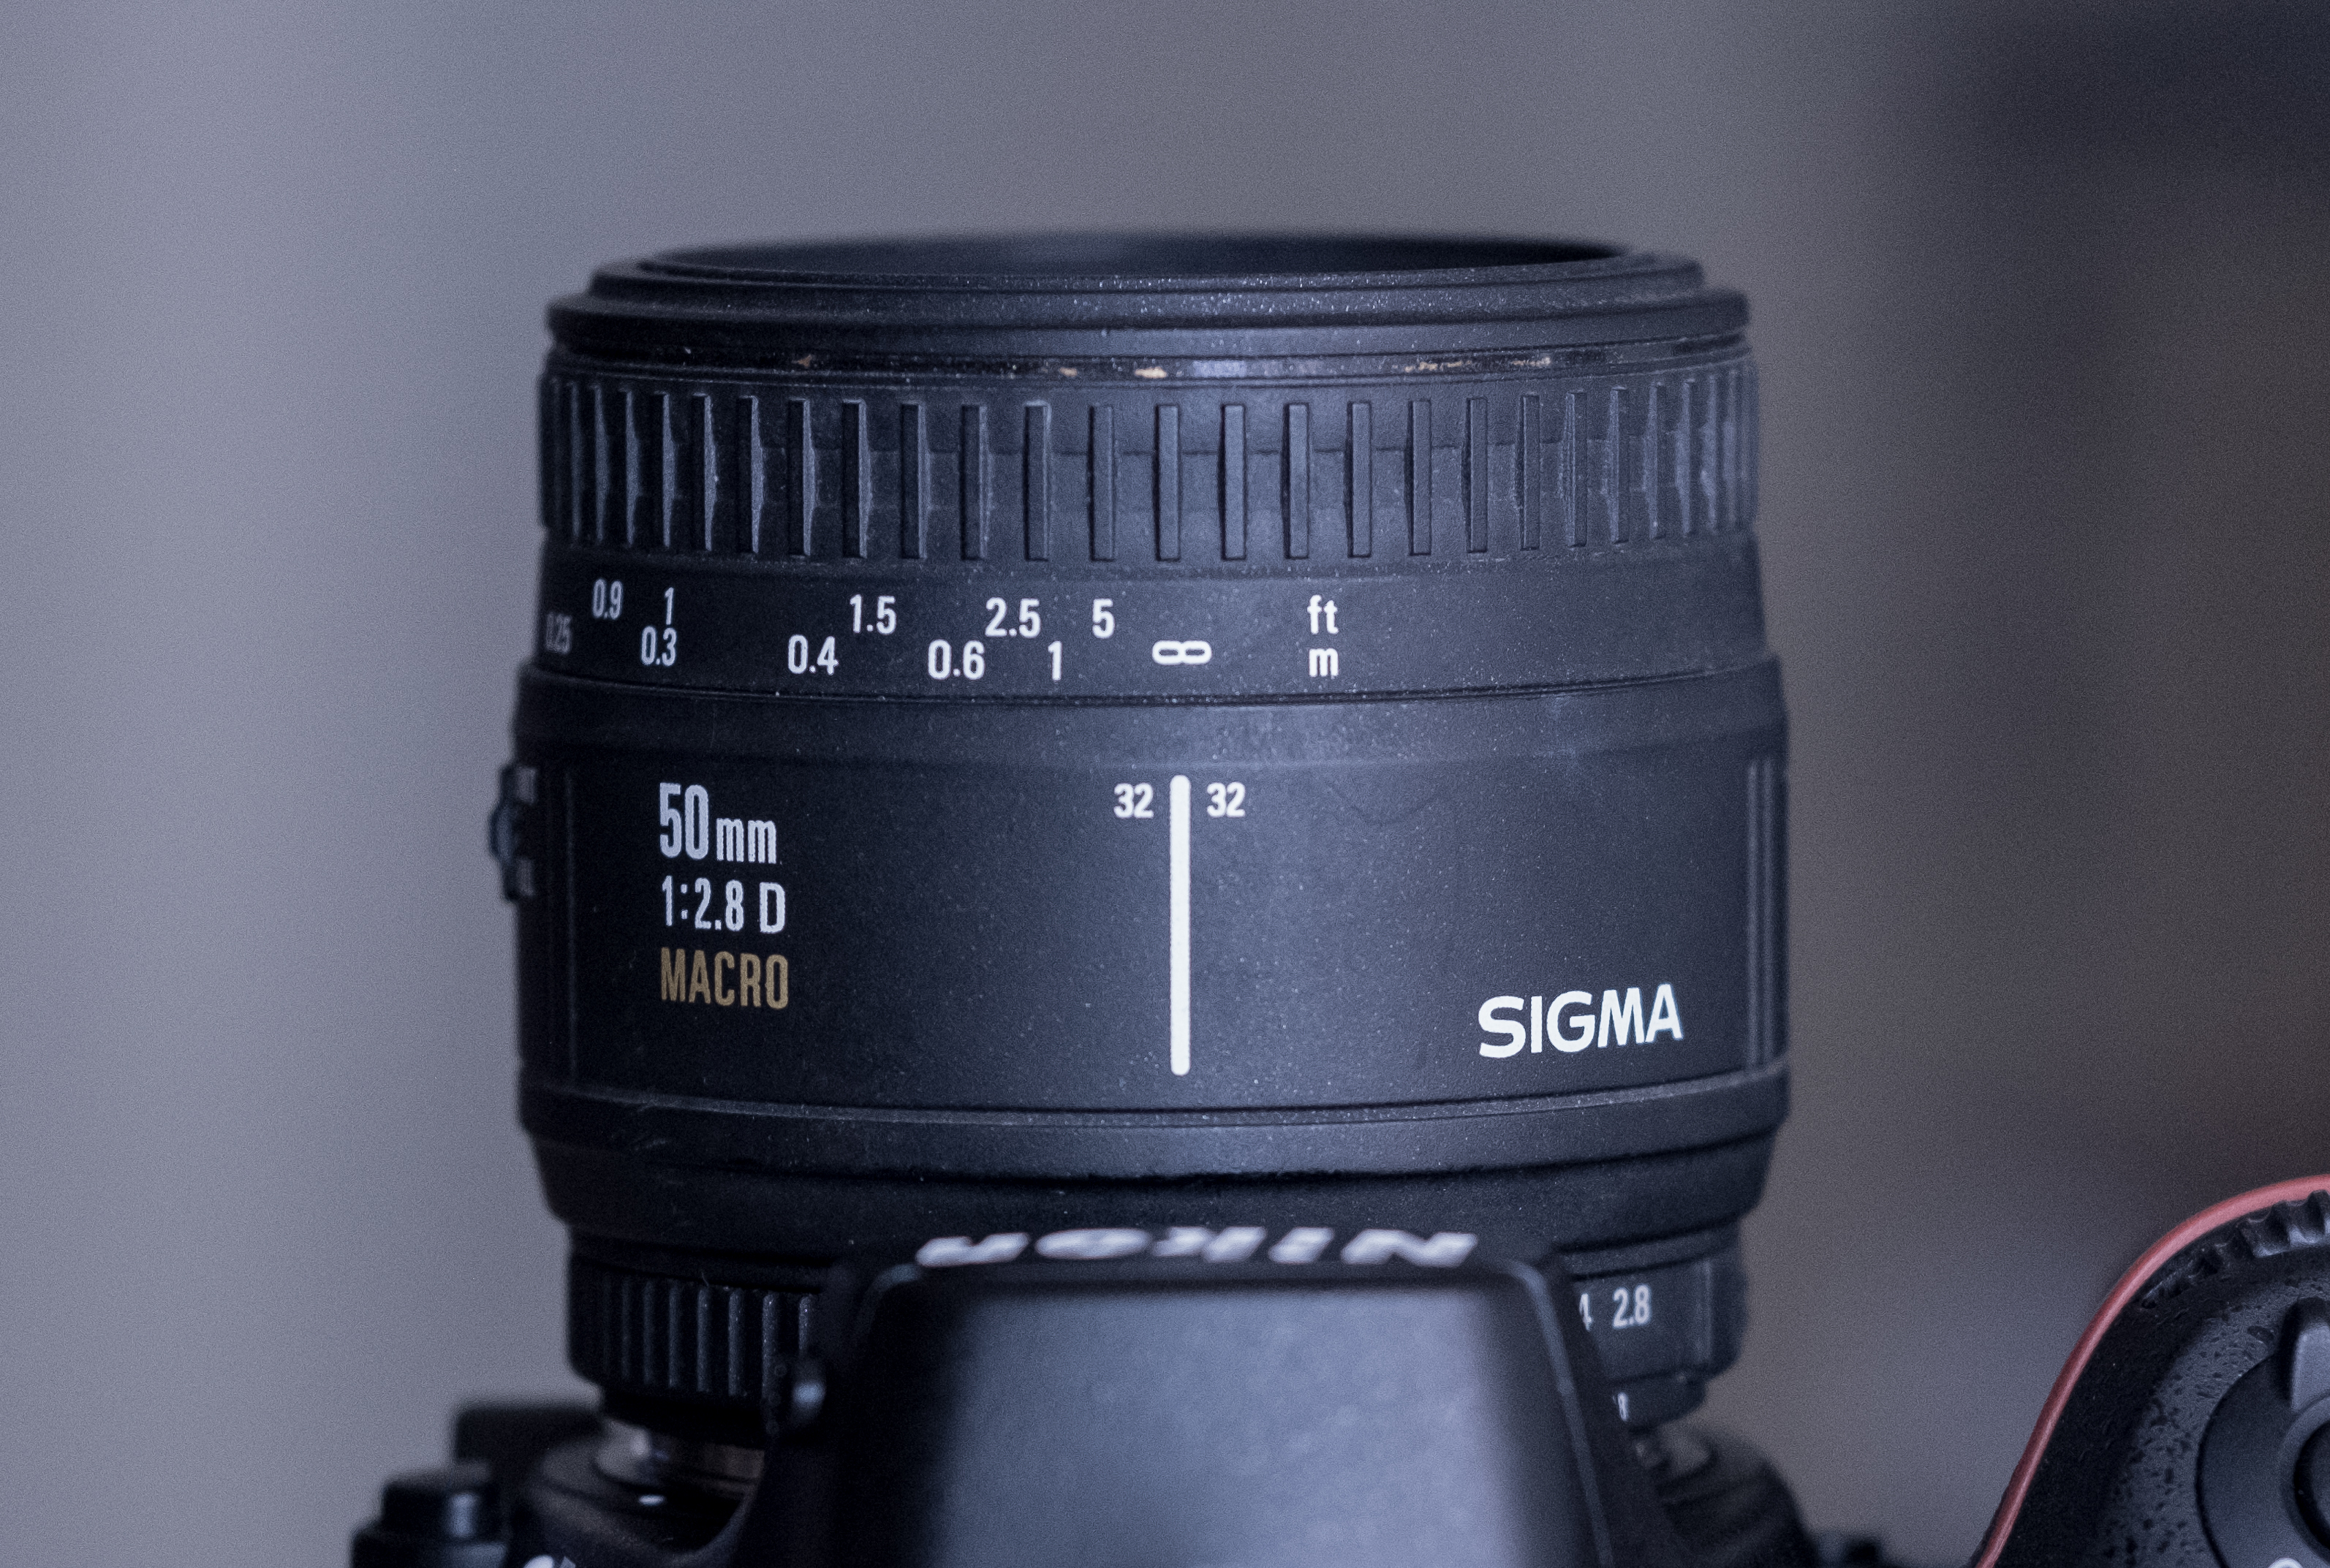 Thrift Shop Sigma 50mm f/2.8D EX Macro | FujifilmX